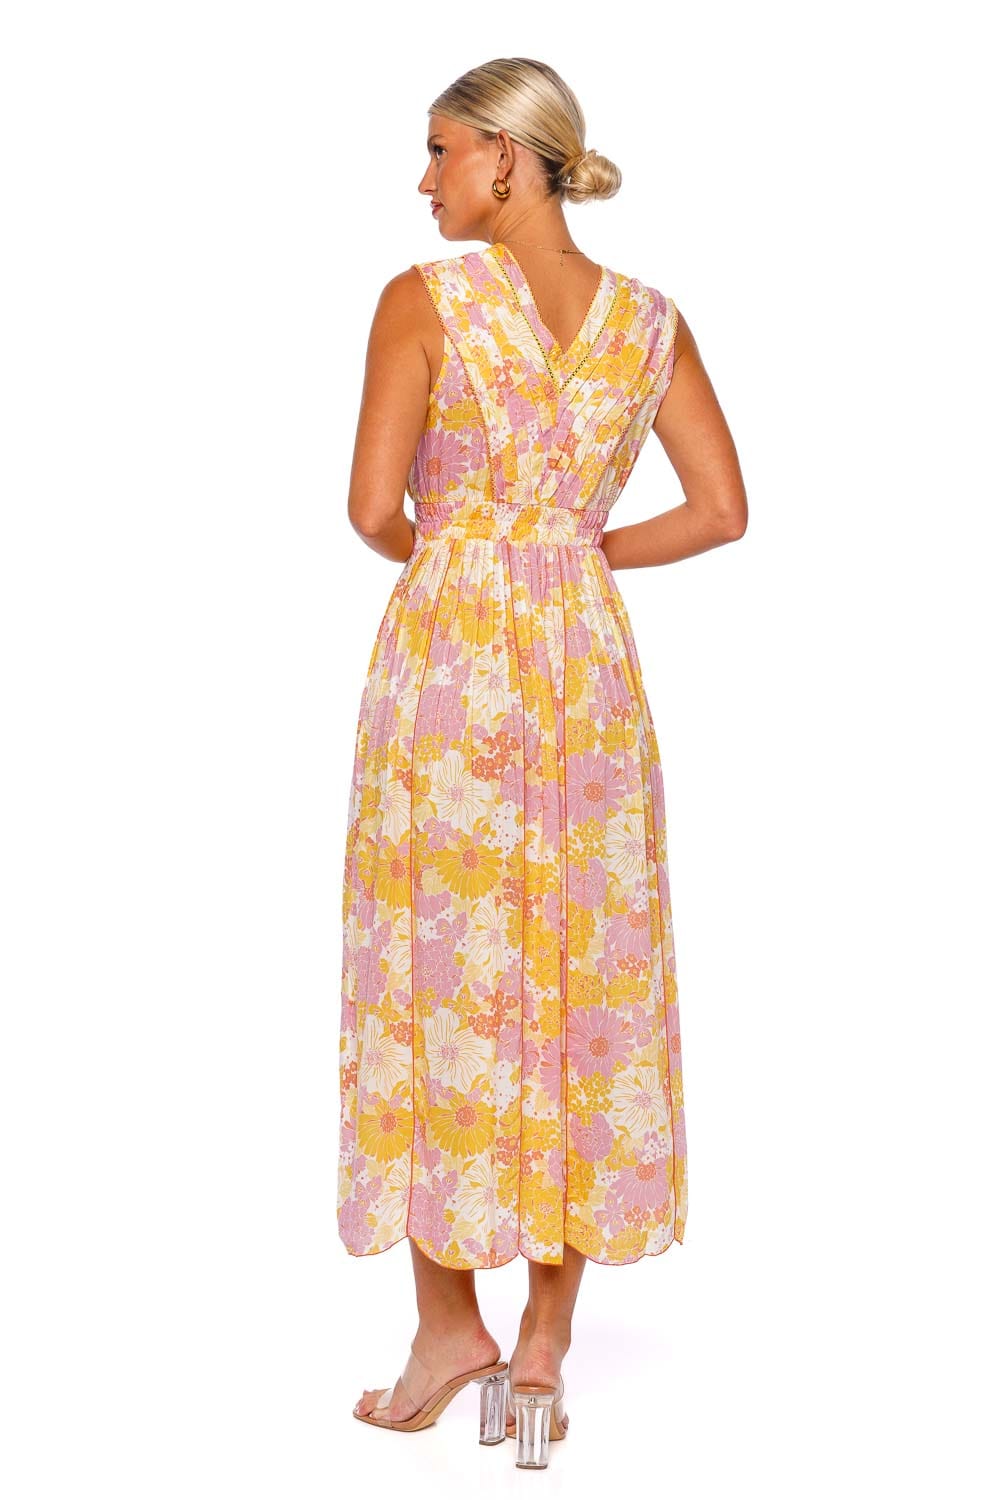 Poupette St Barth Agnes Yellow Flower Maxi Dress